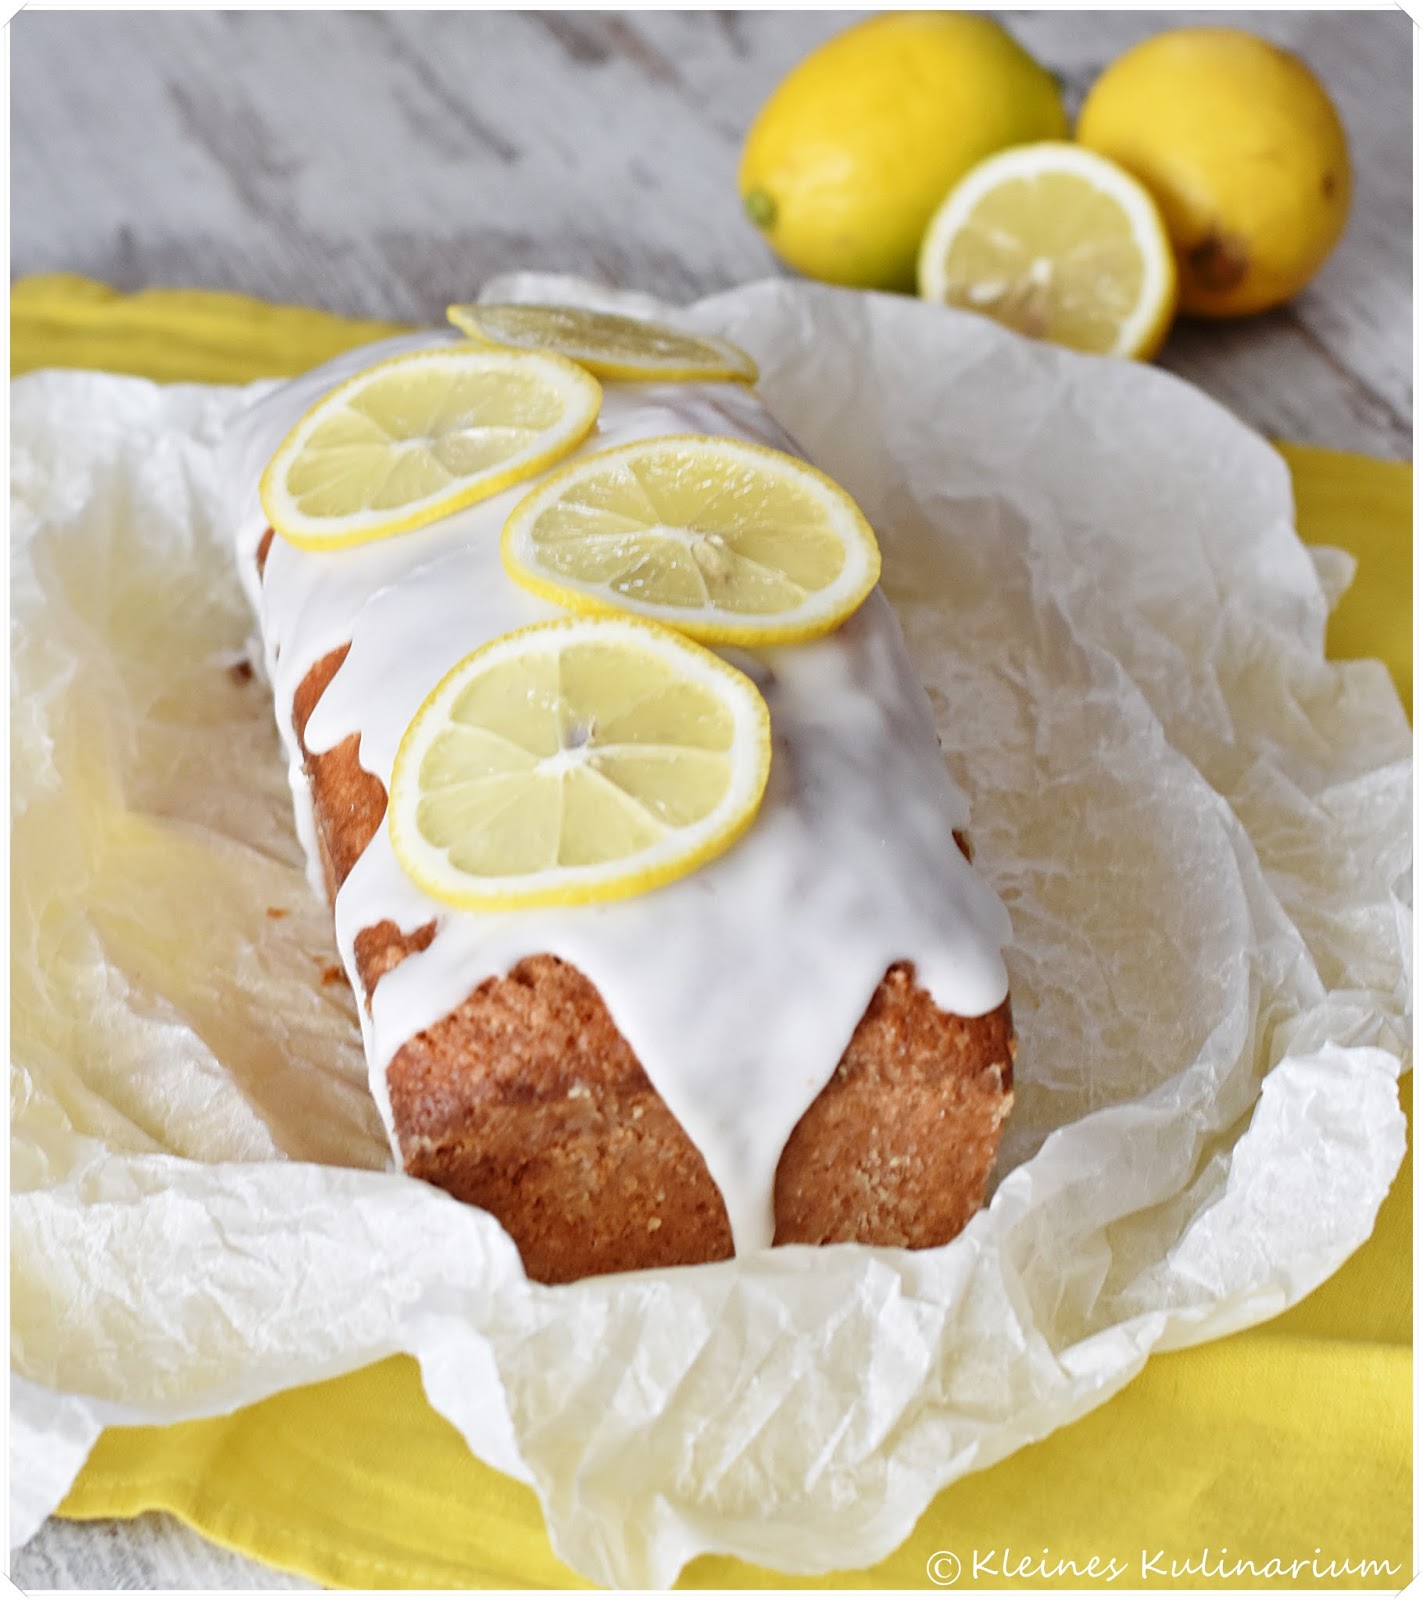 münchnerküche: [Gastbeitrag] Saftiger Zitronenkuchen mit Zitronensirup ...